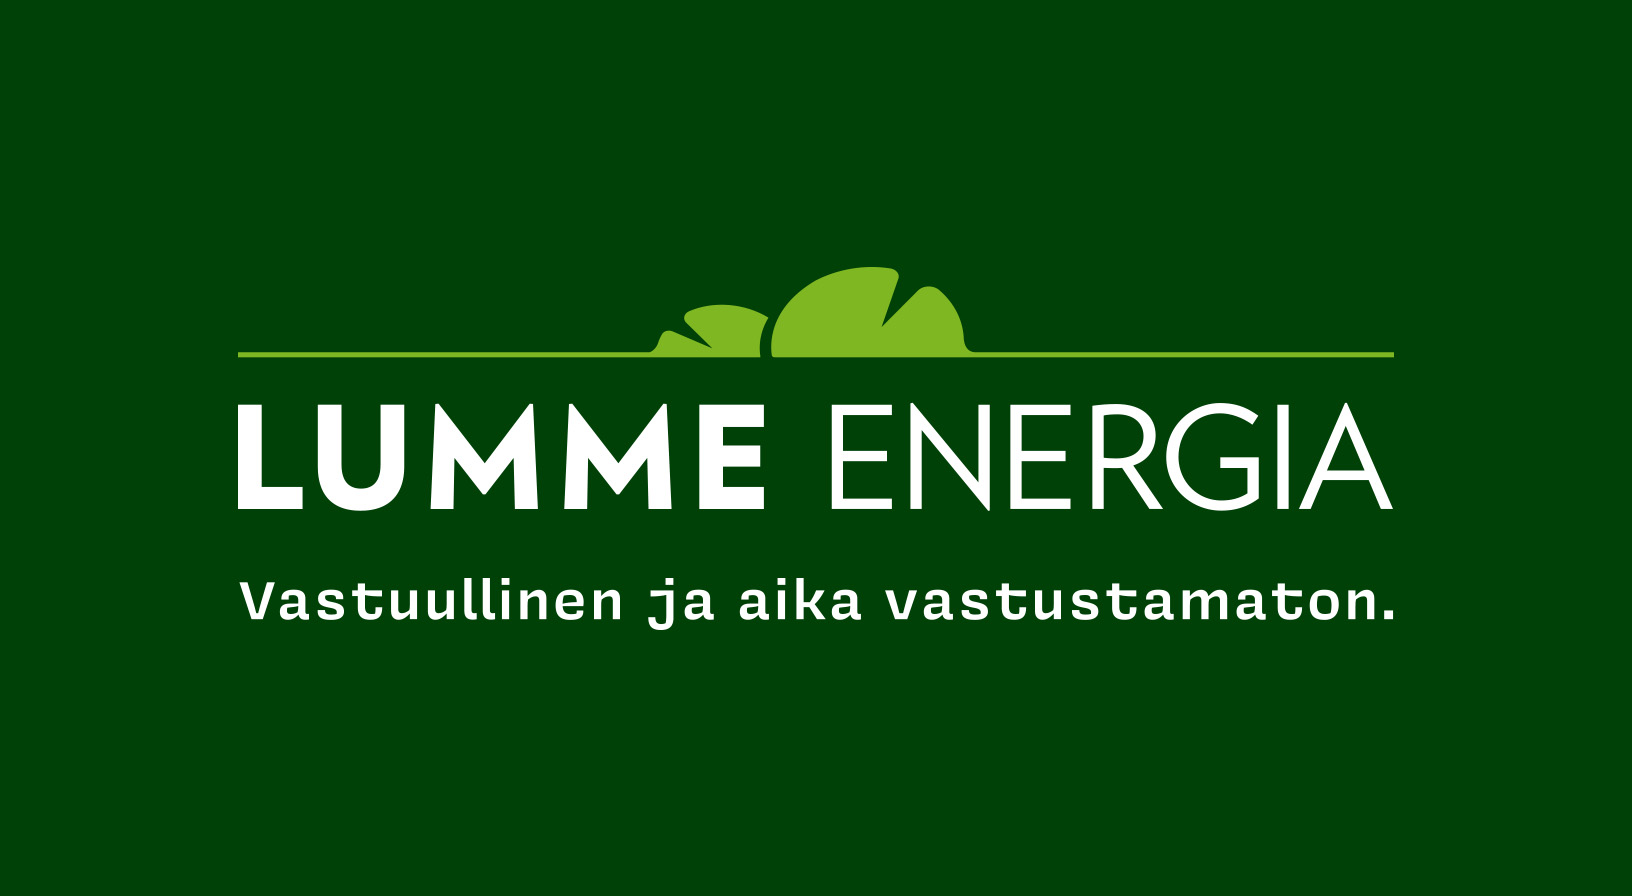 Lumme energian logo ja slogan: "Vastuullinen ja aika vastustamaton"